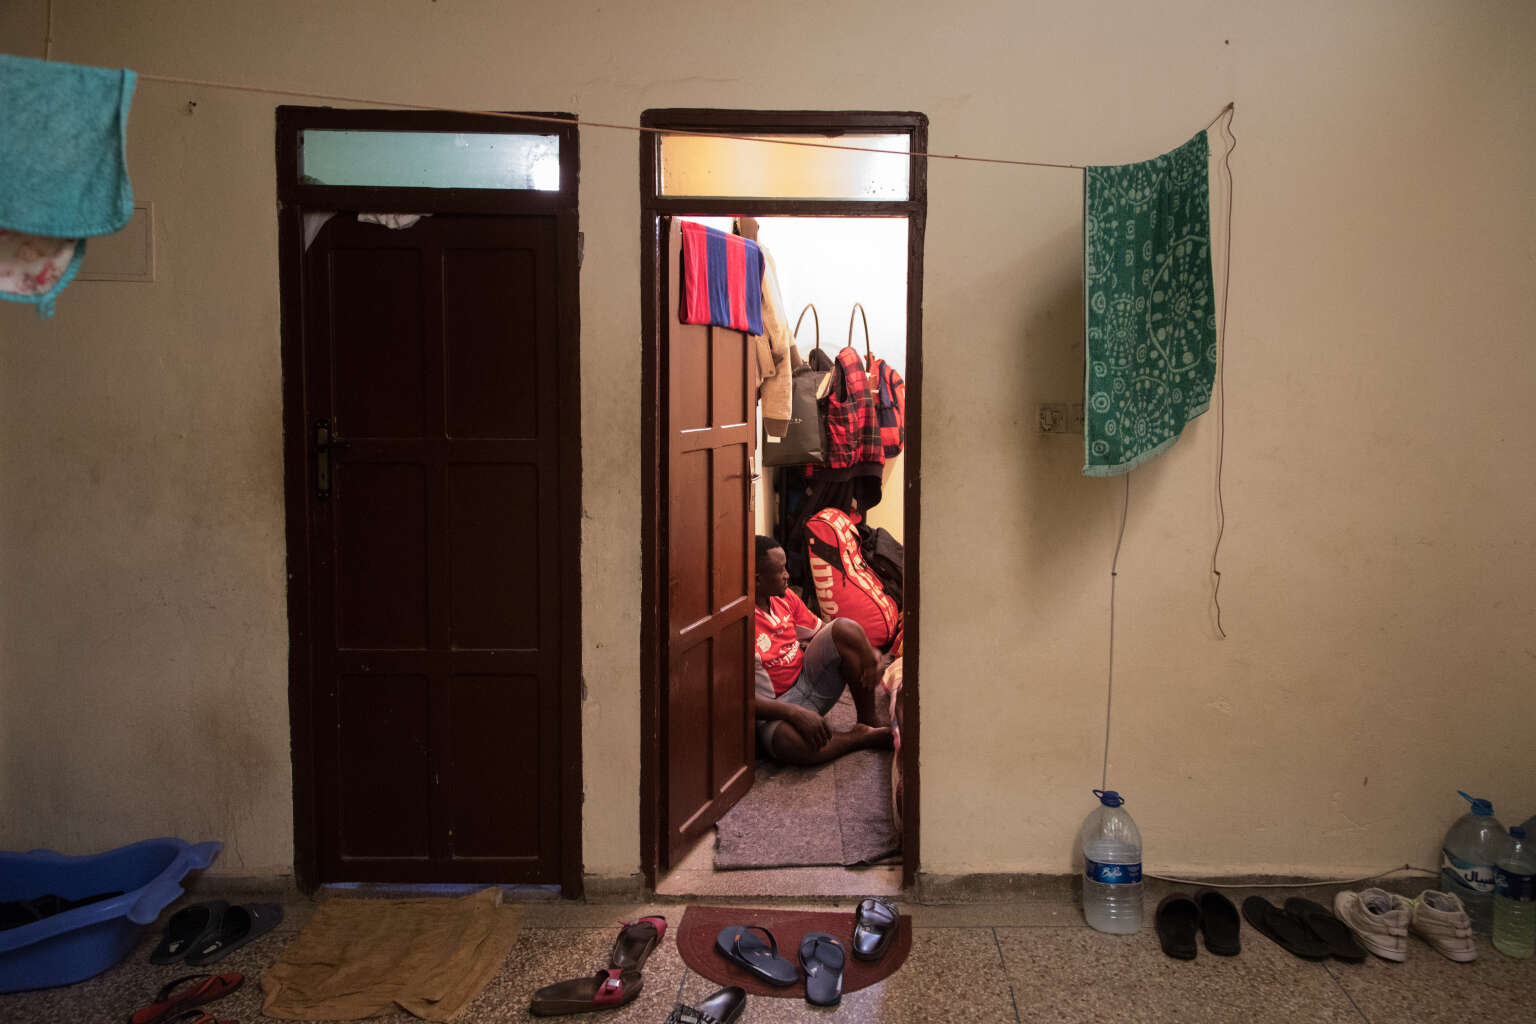  Vincent et Donatien partagent, en banlieue d’Agadir, un appartement de deux pièces avec une femme ivoirienne et son enfant. Leur loyer est de 1400 dirhams par mois (environ 140 euros). Crédits : CAMILLE MILLERAND POUR LE MONDE 